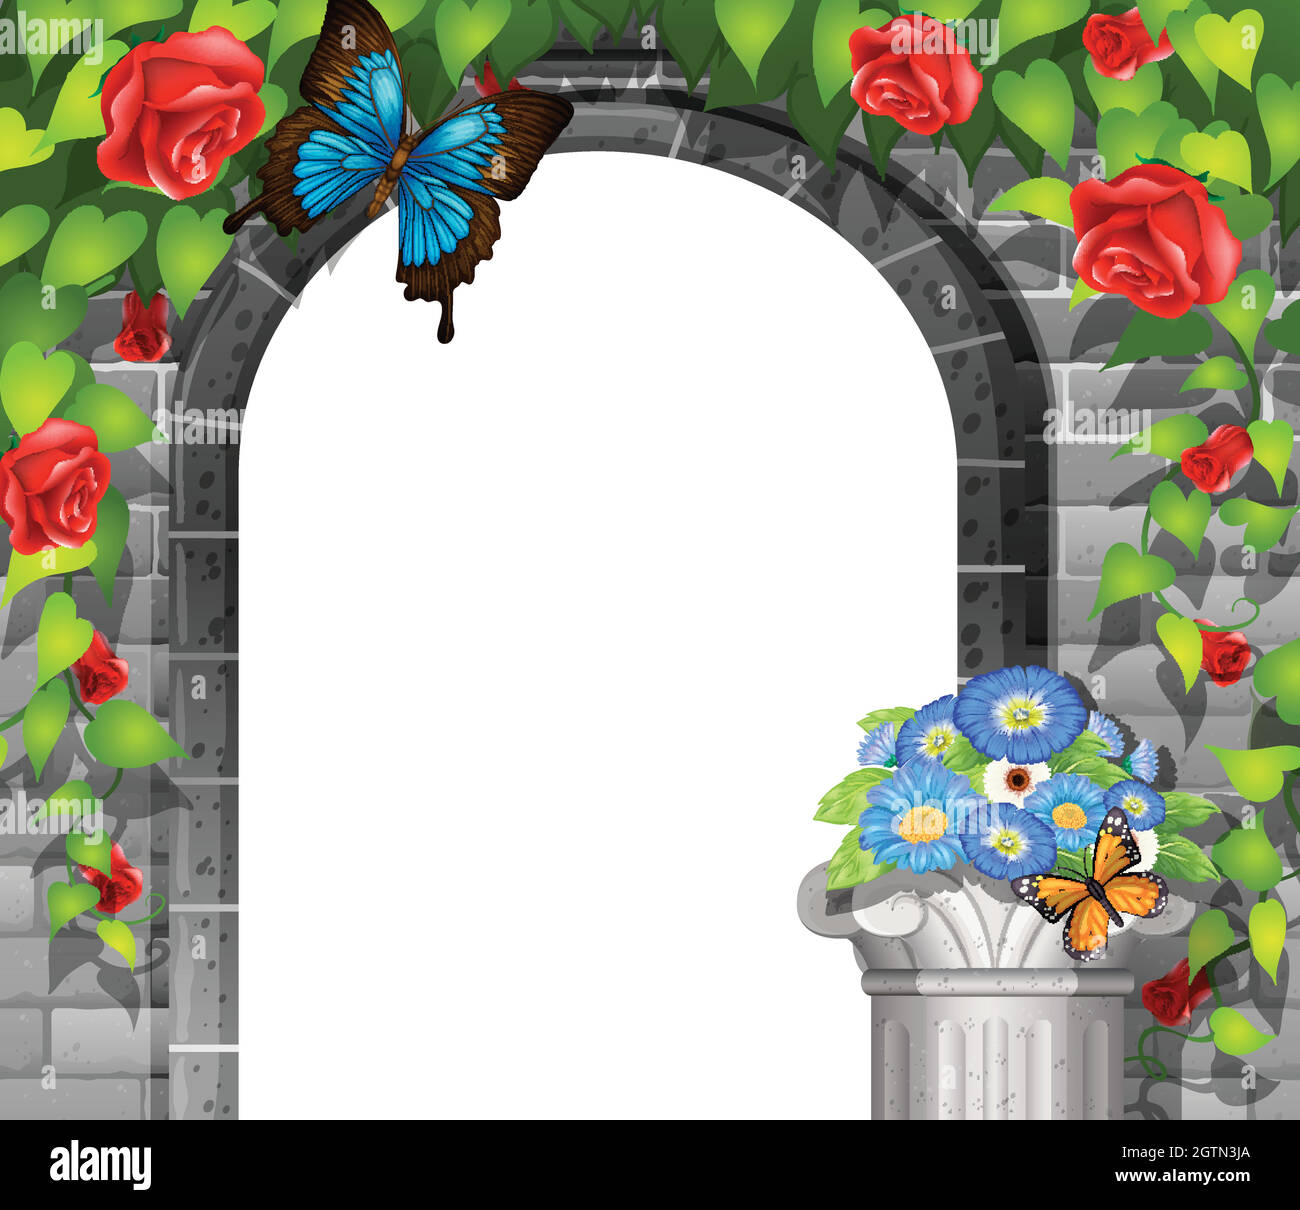 Scène avec mur de briques et roses Illustration de Vecteur